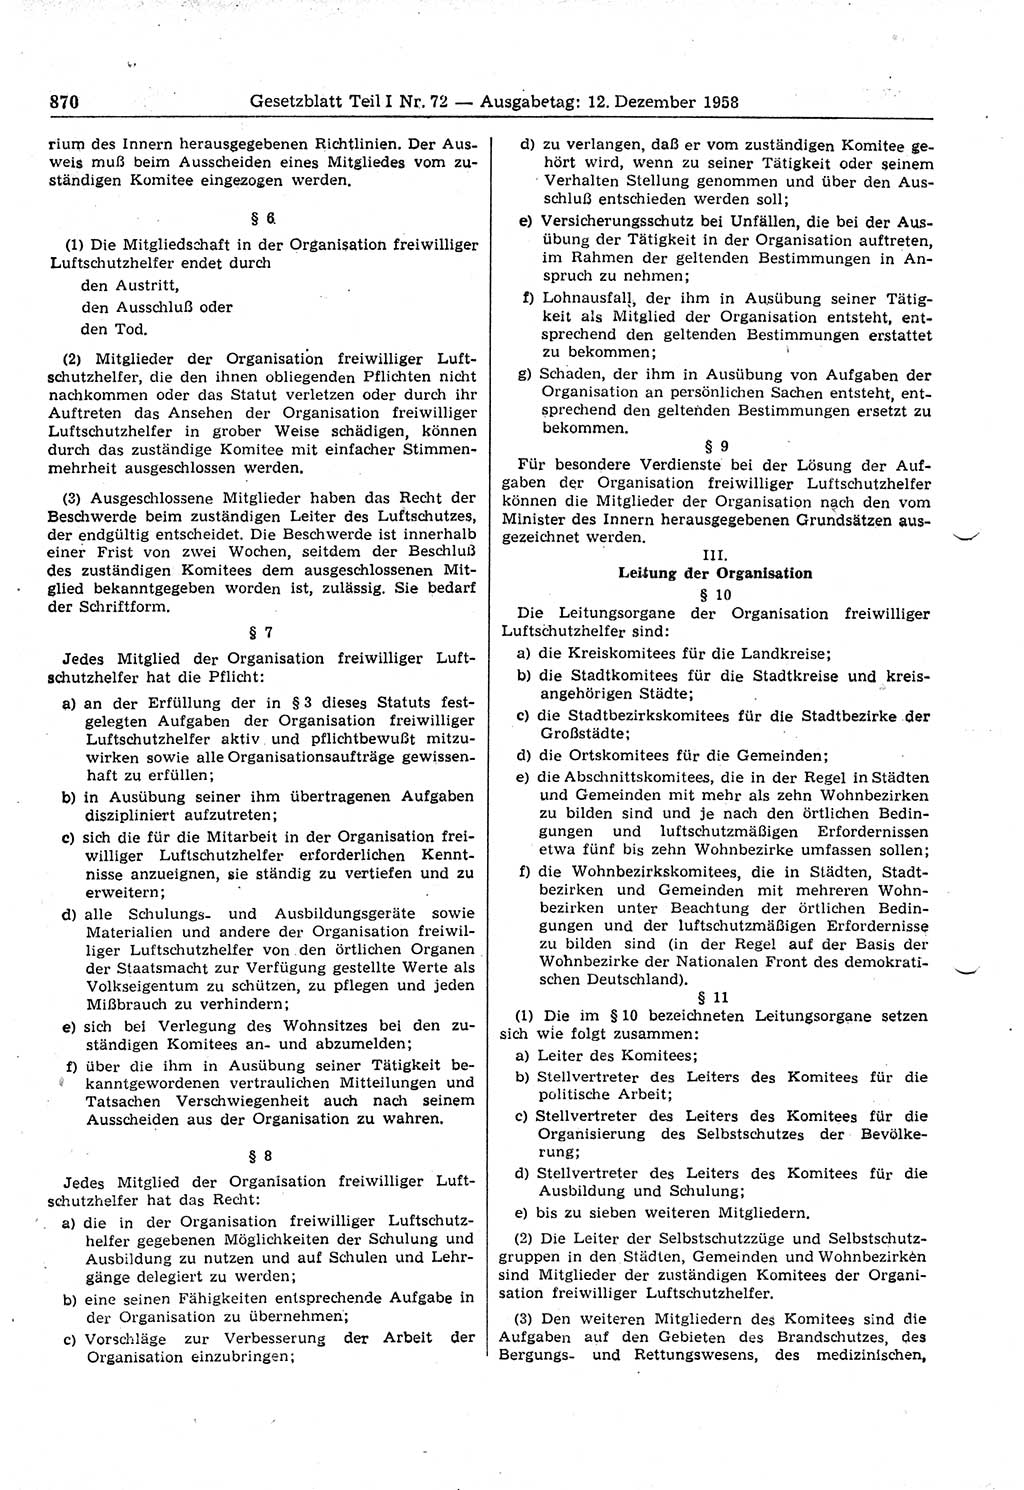 Gesetzblatt (GBl.) der Deutschen Demokratischen Republik (DDR) Teil Ⅰ 1958, Seite 870 (GBl. DDR Ⅰ 1958, S. 870)